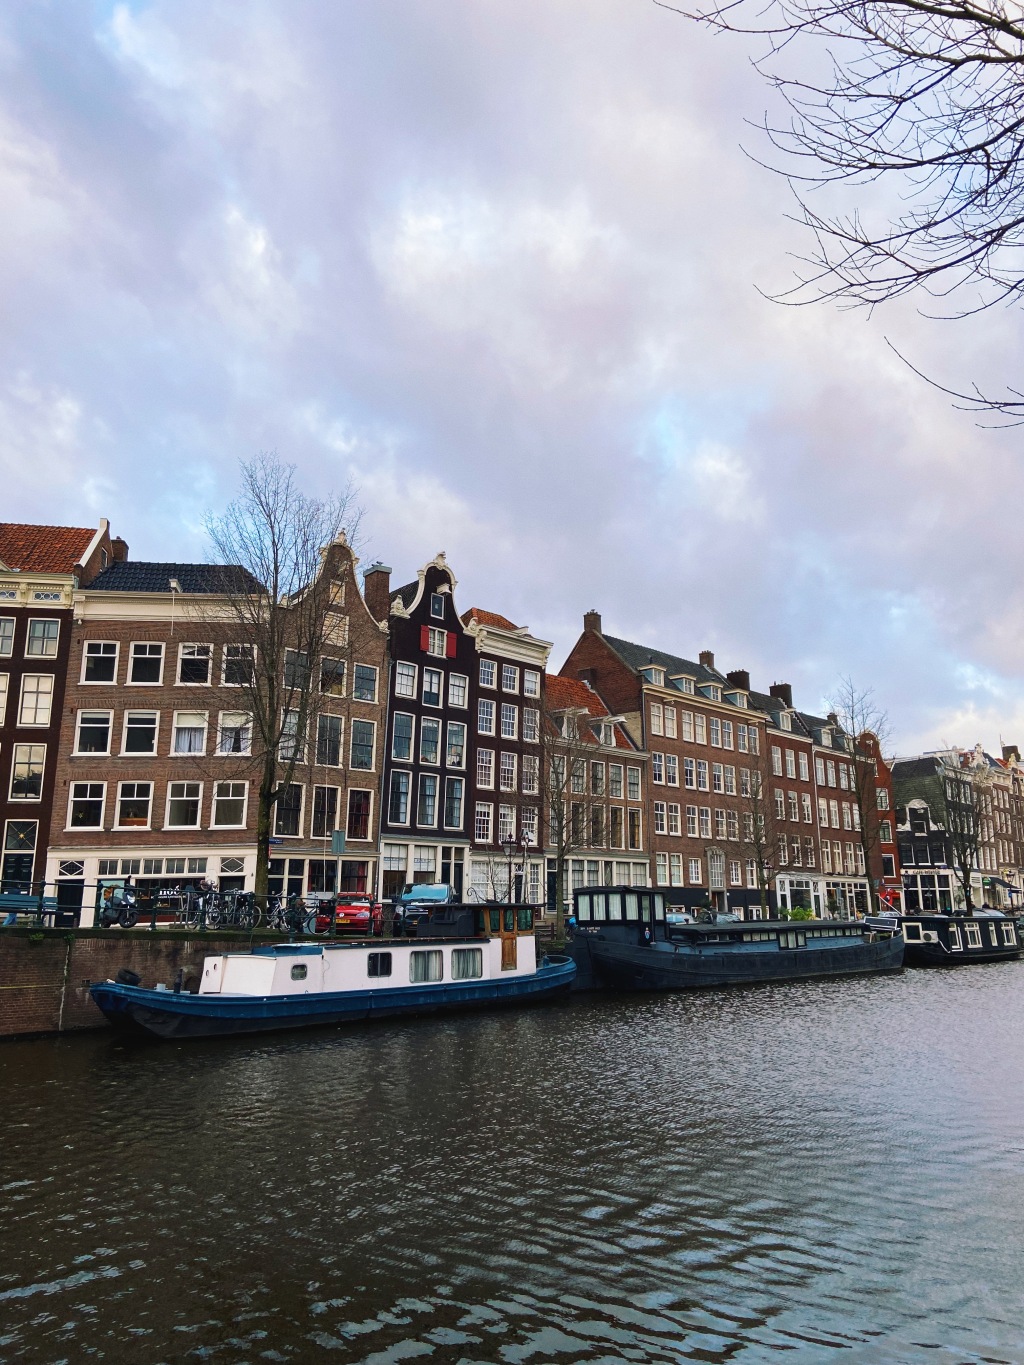 50 curiosidades sobre Amsterdam